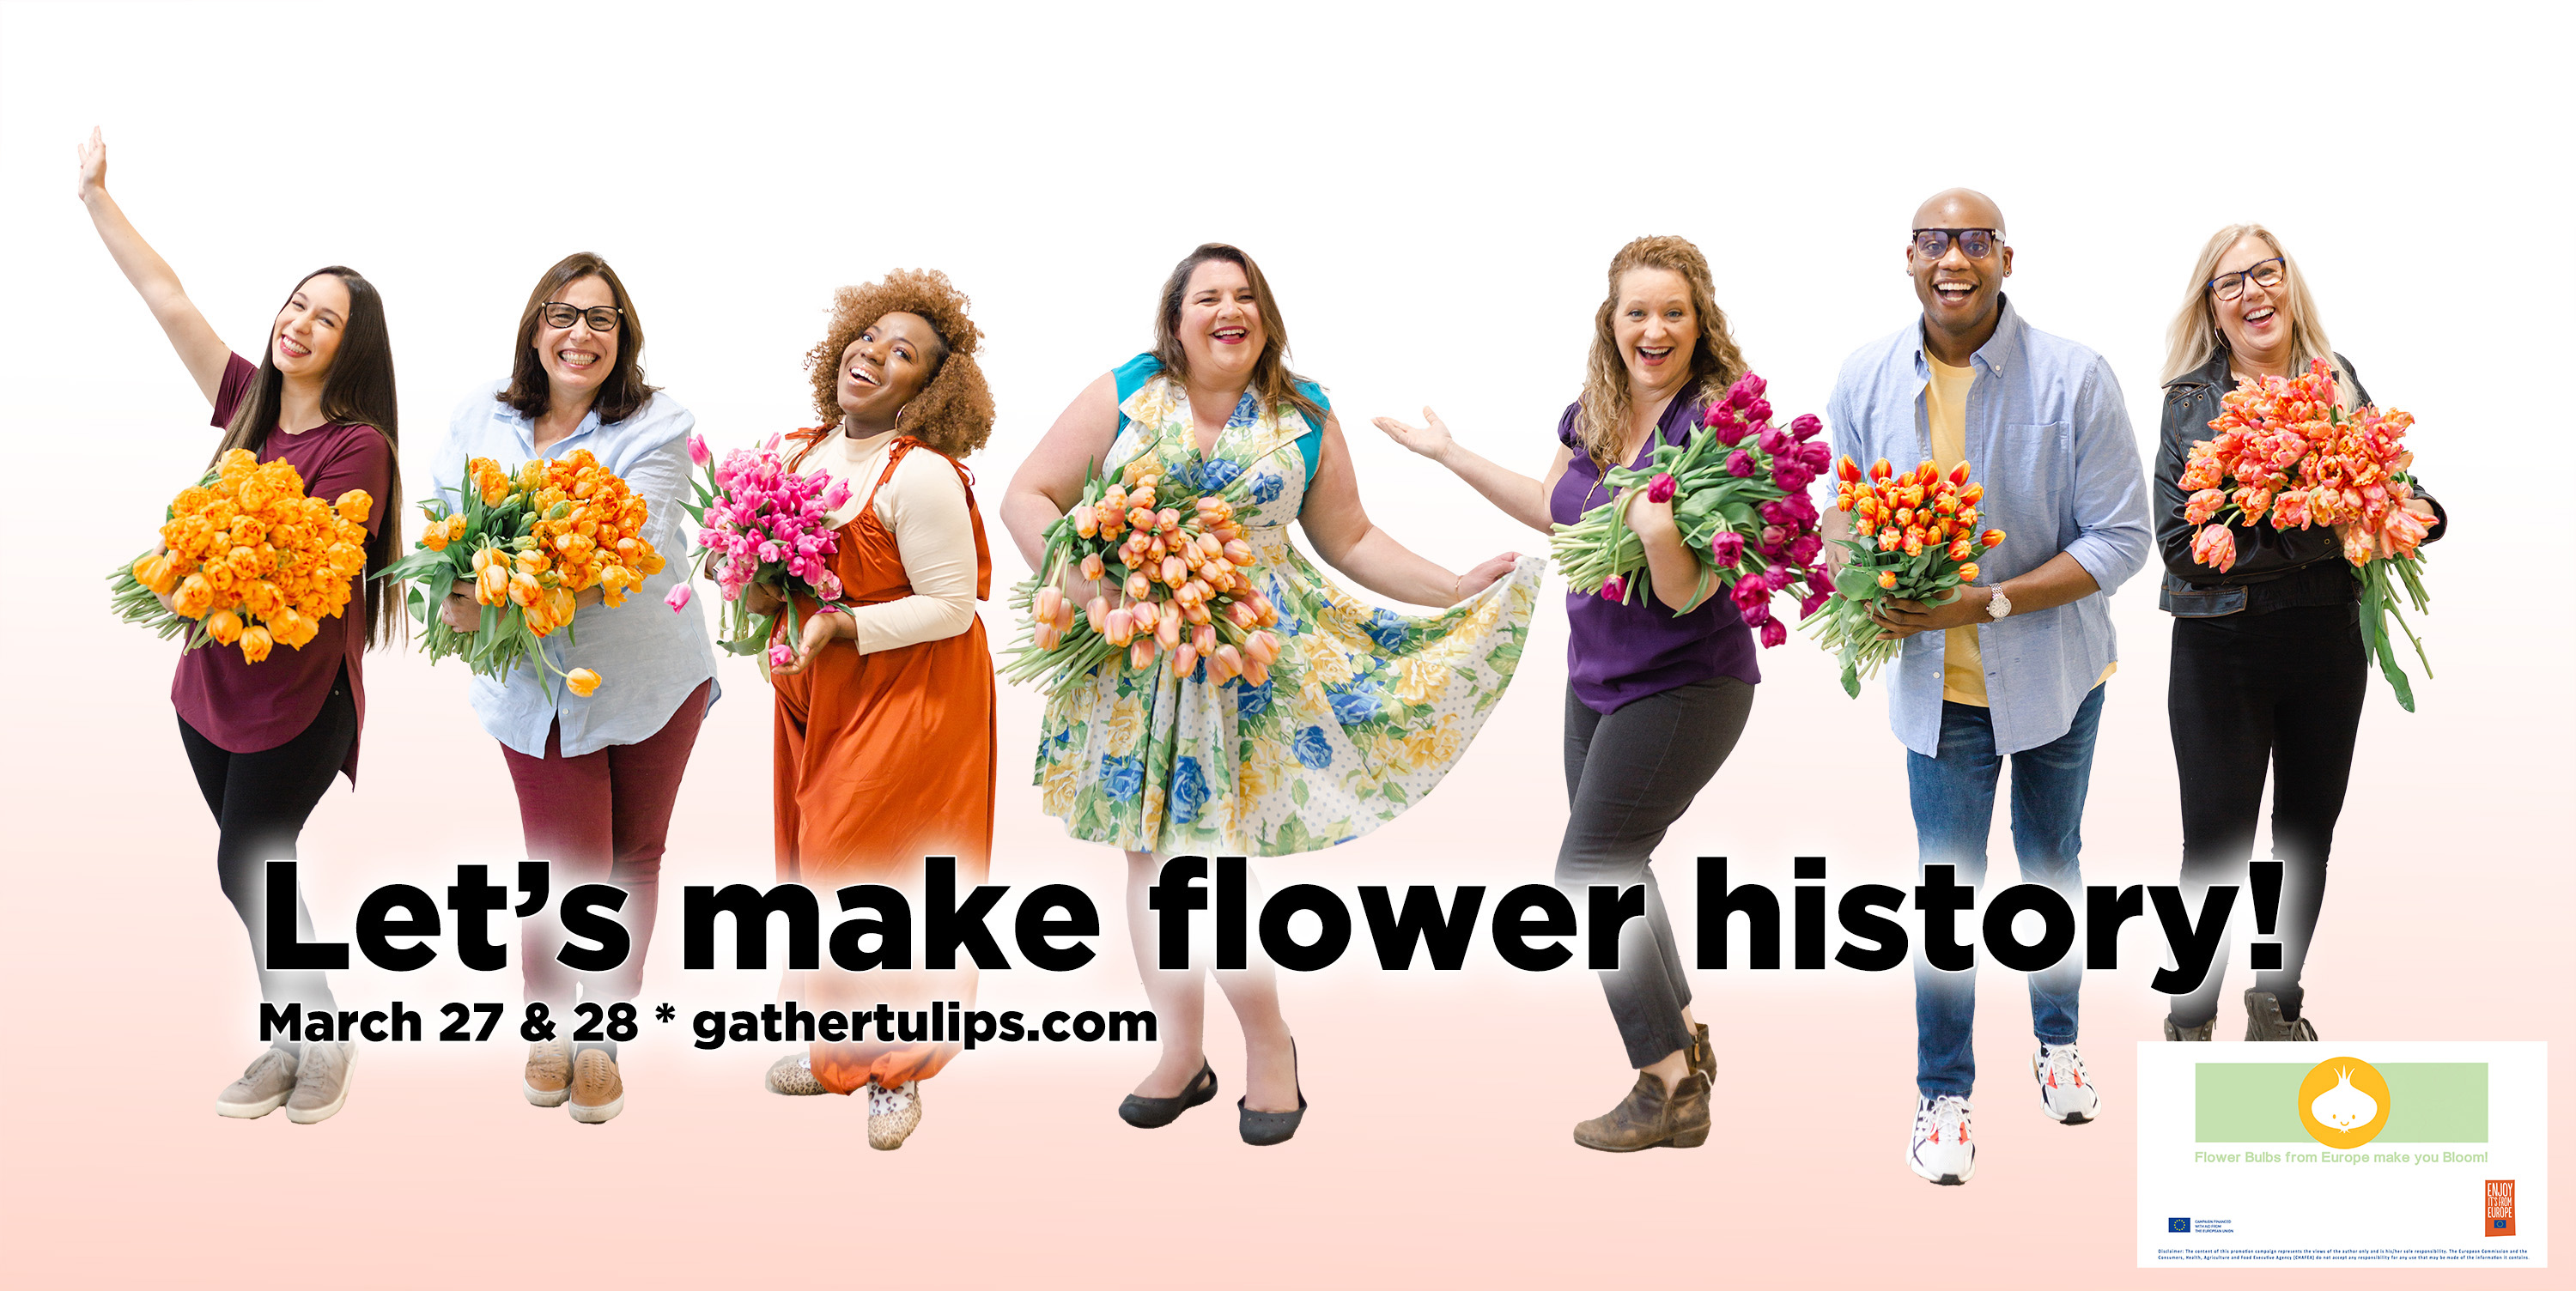 Let's Make Flower History!